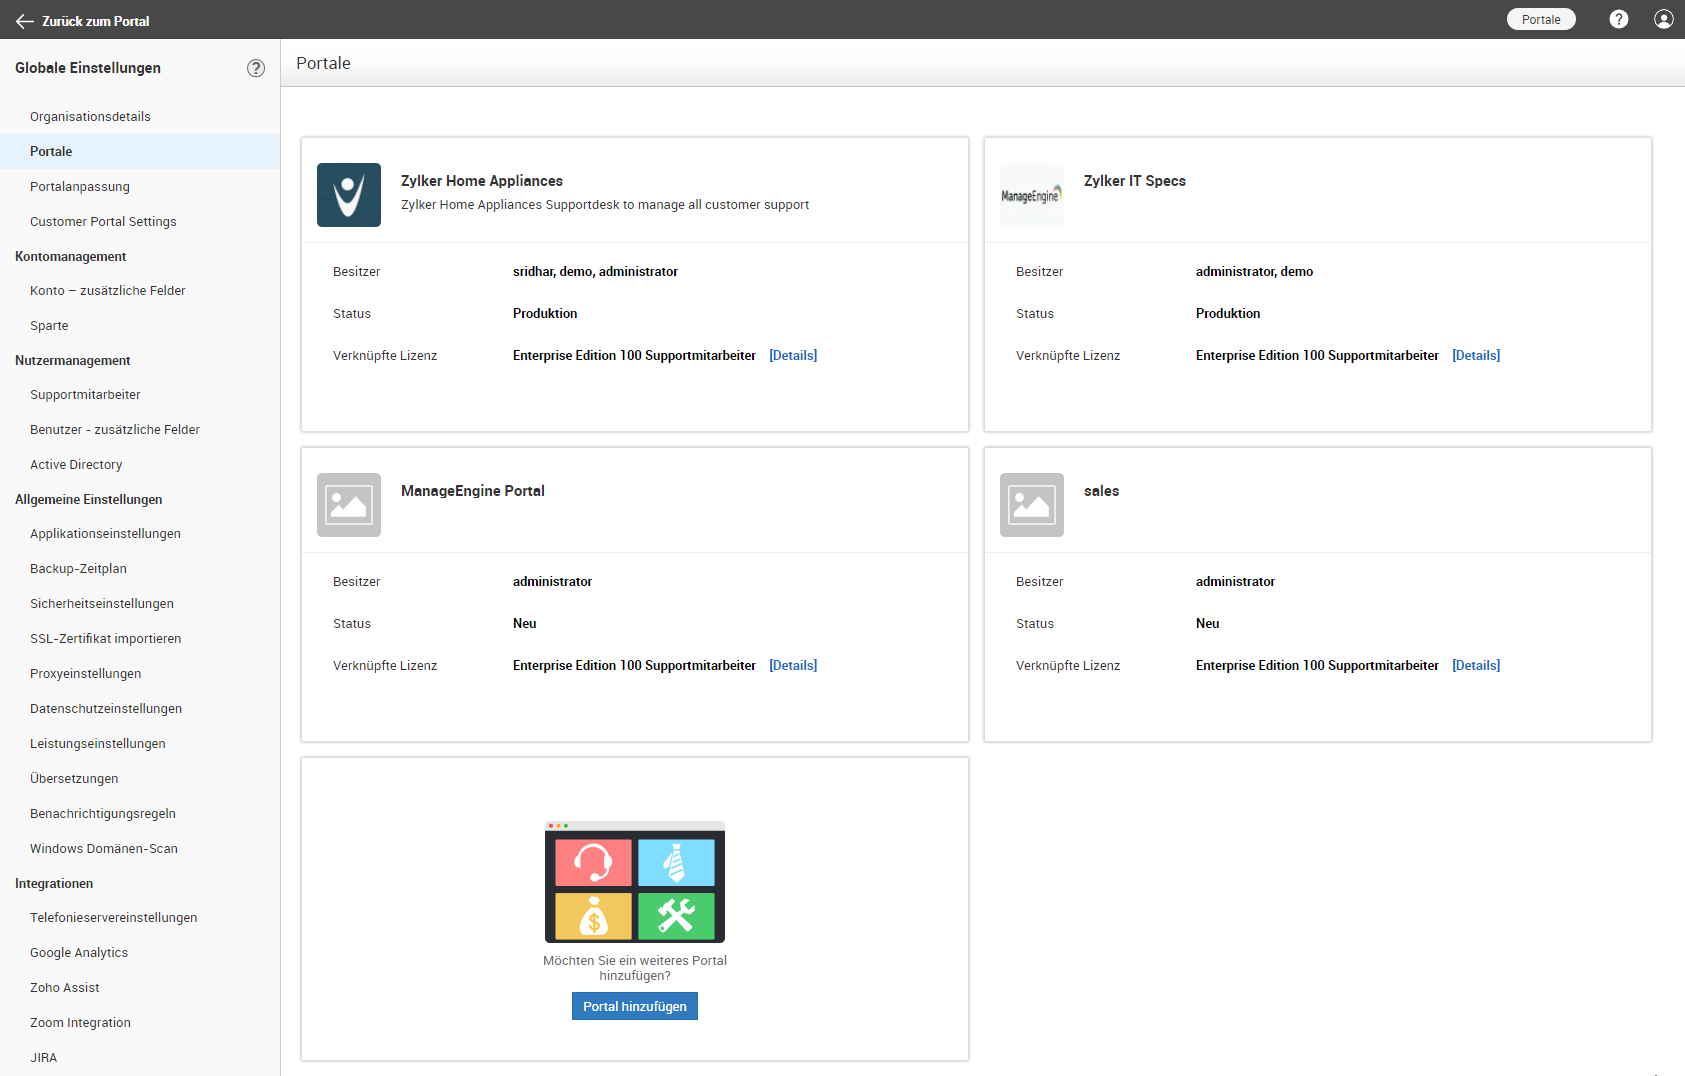 Screenshot SupportCenter Plus: Portale für verschiedene Abteilungen